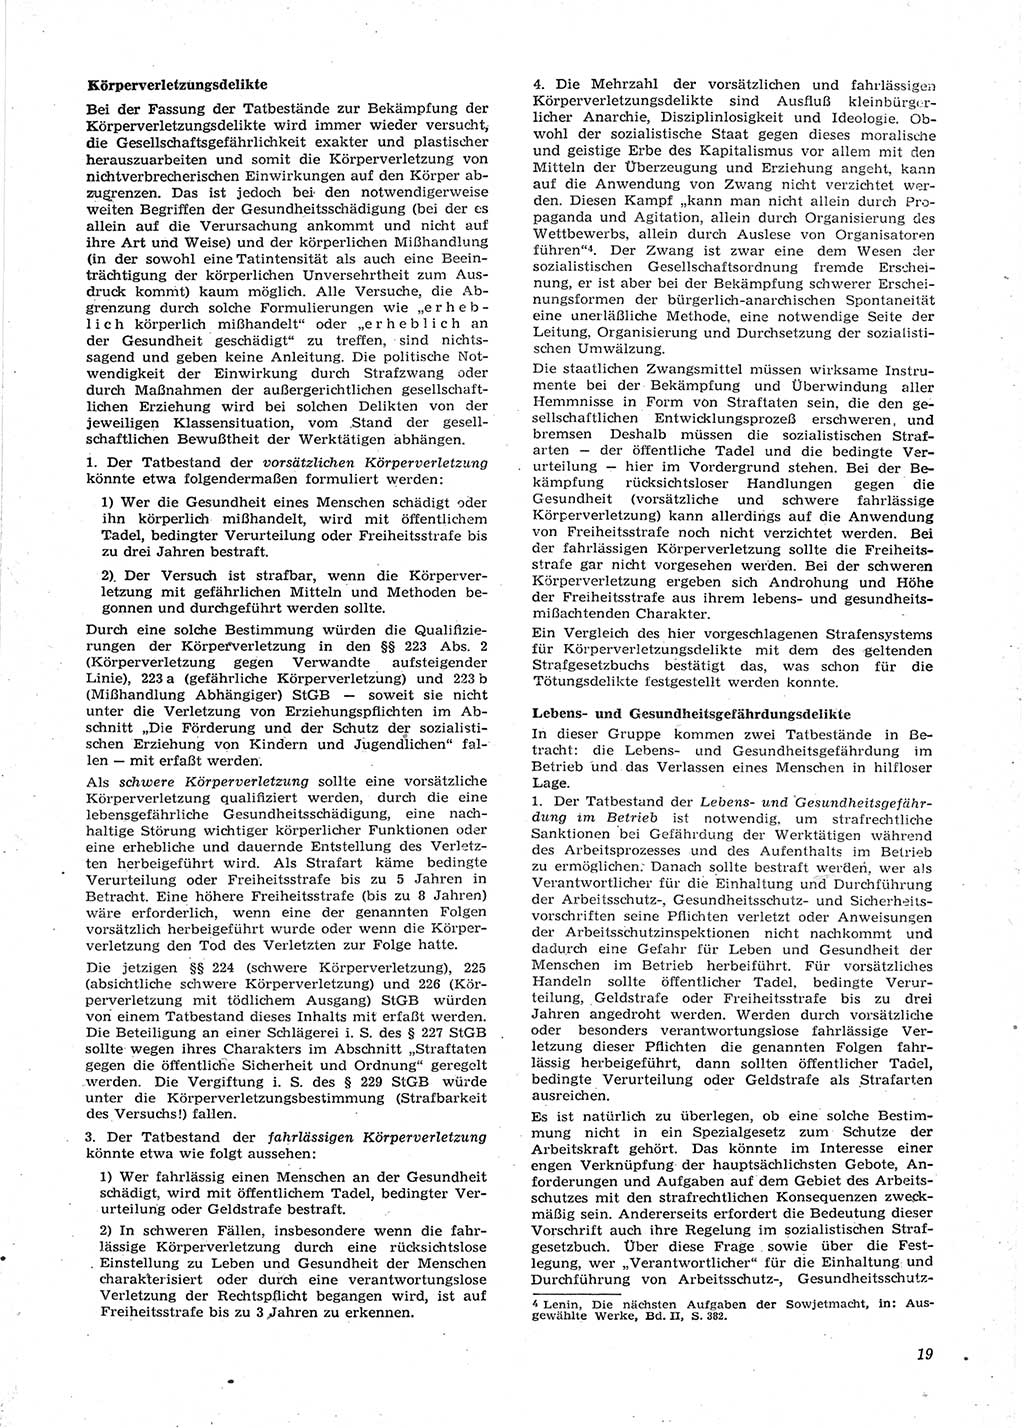 Neue Justiz (NJ), Zeitschrift für Recht und Rechtswissenschaft [Deutsche Demokratische Republik (DDR)], 15. Jahrgang 1961, Seite 19 (NJ DDR 1961, S. 19)